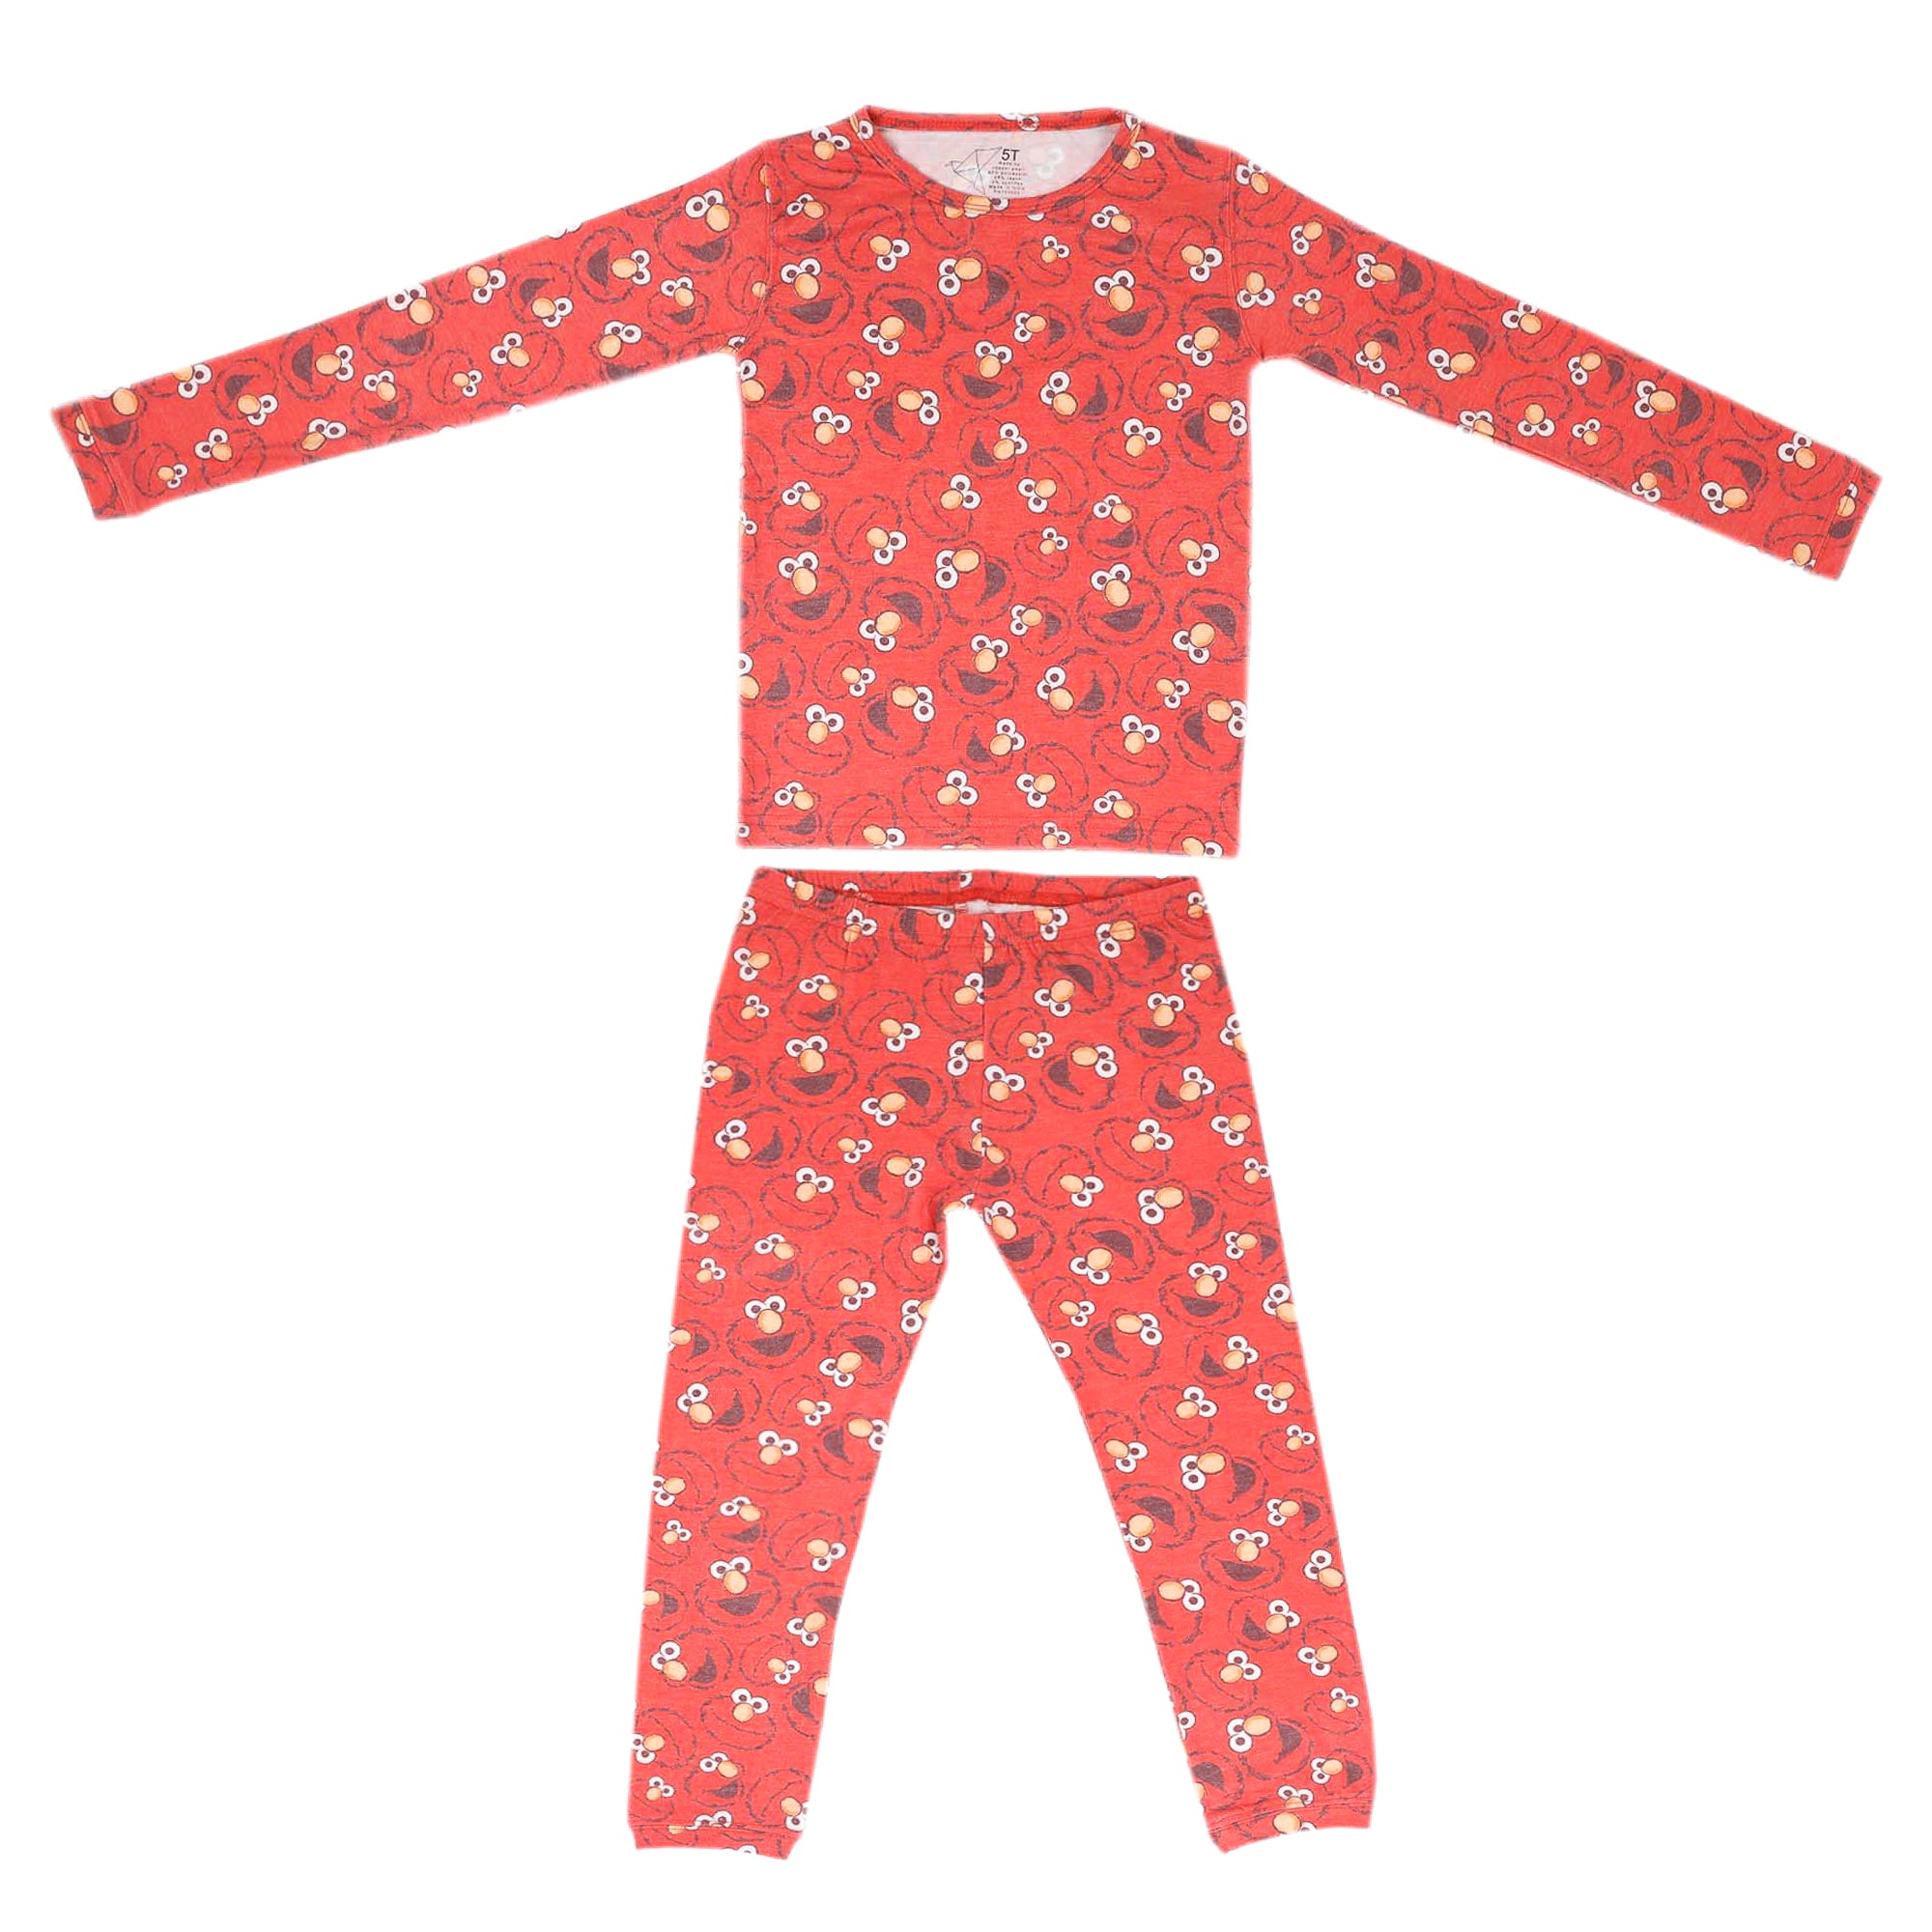 2pc Long Sleeve Pajama Set - Elmo